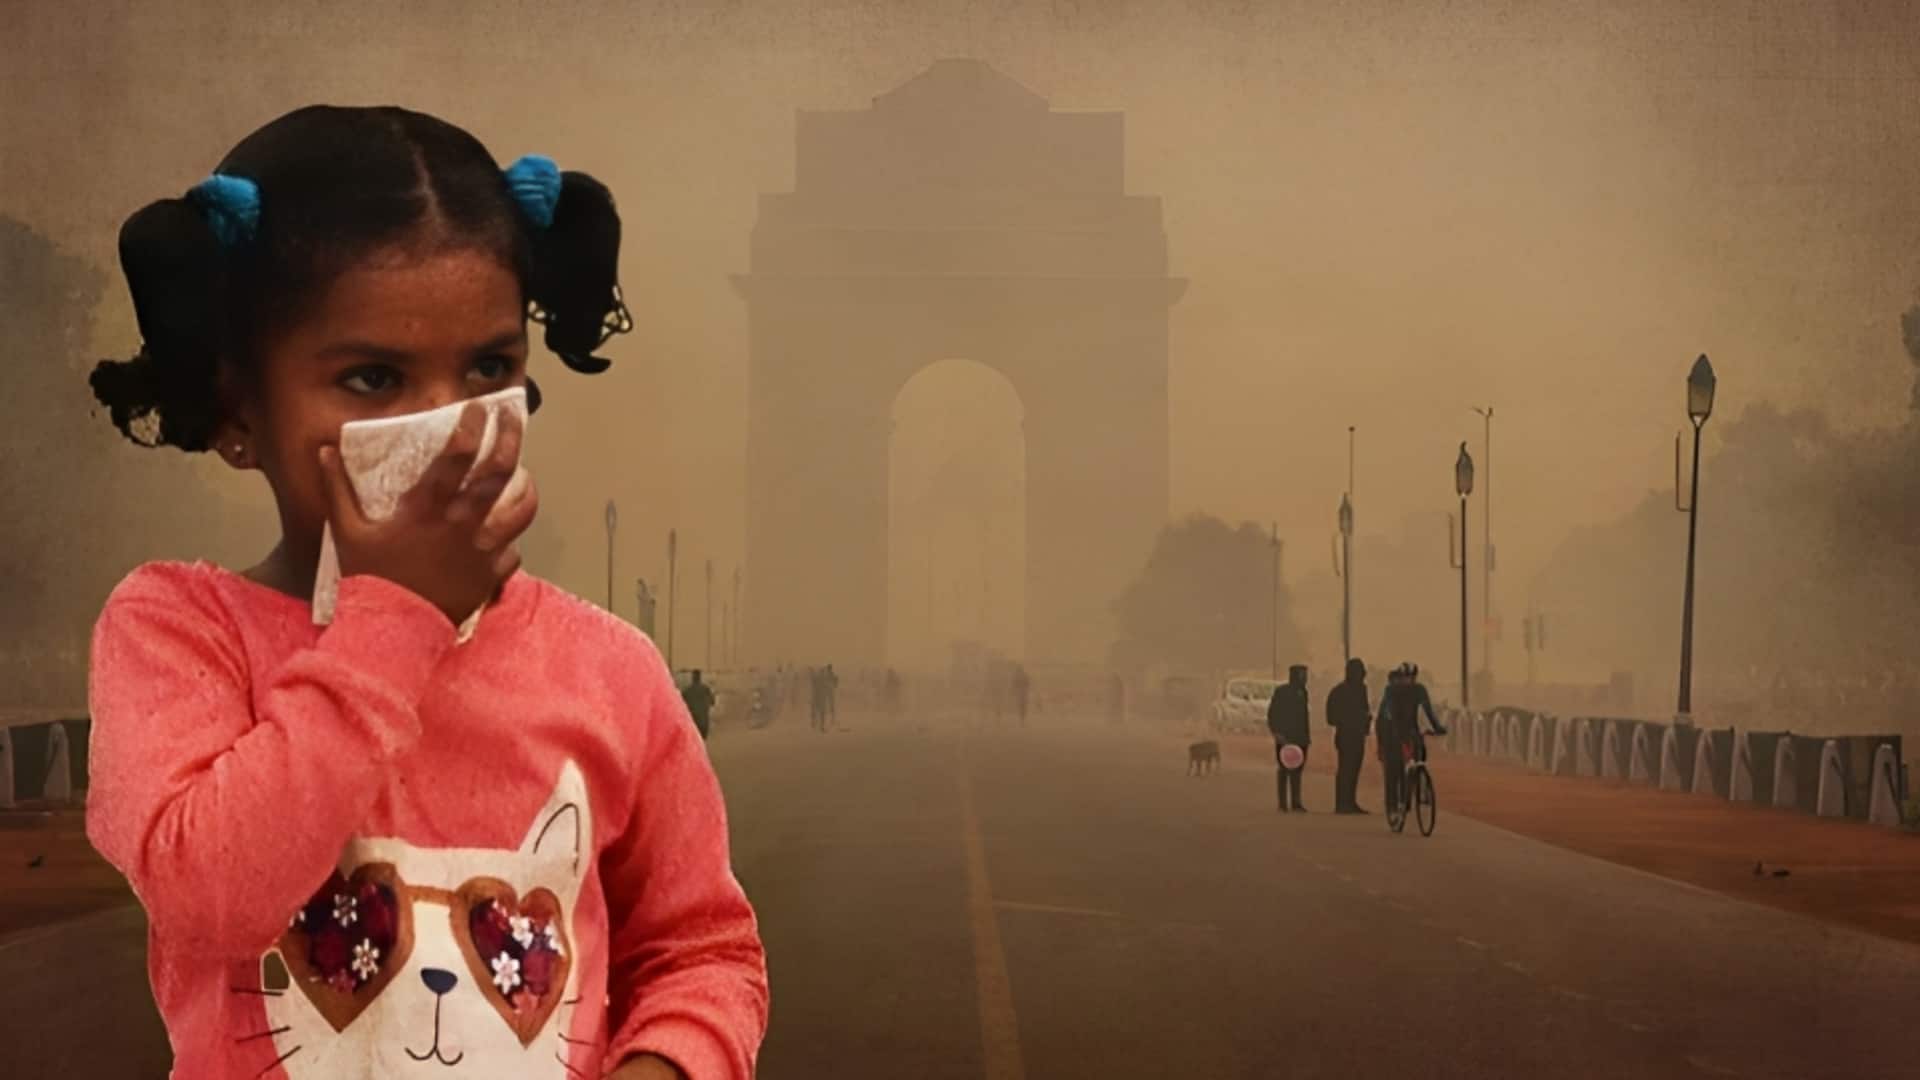 वायु प्रदूषण पर सुप्रीम कोर्ट सख्त, दिल्ली समेत 5 राज्यों से पूछा- क्या कदम उठाए